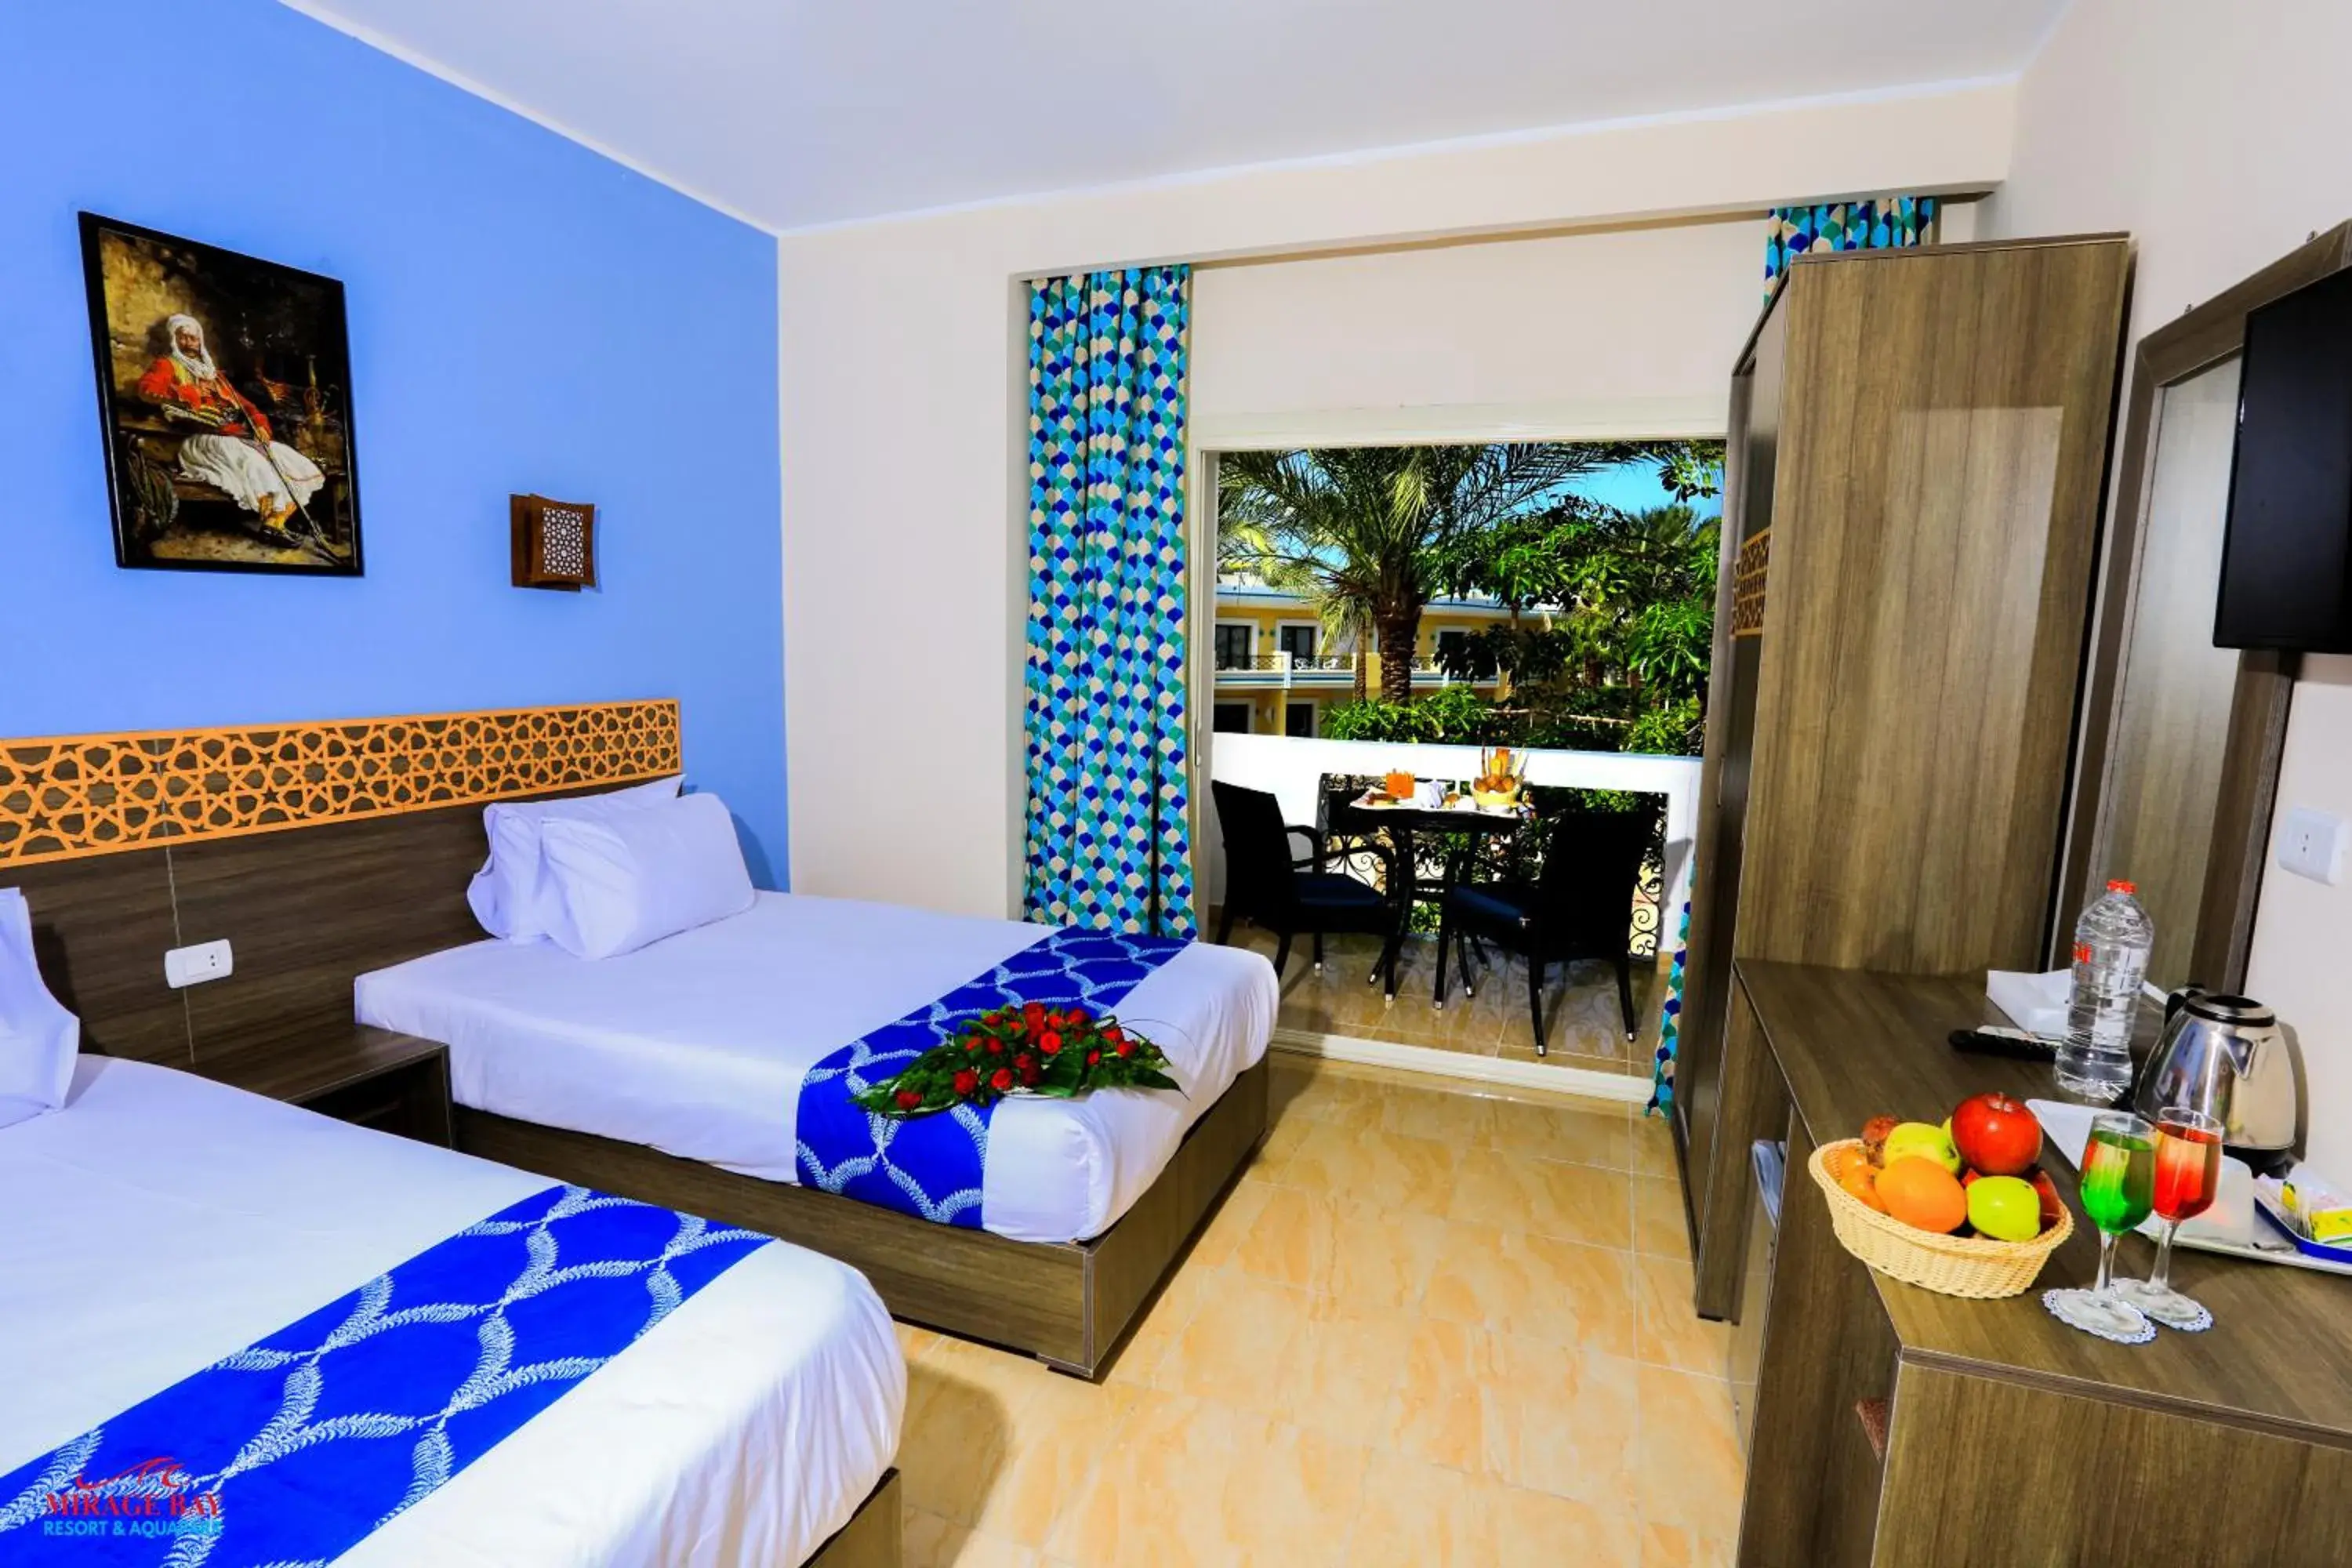 Bed in Mirage Bay Resort & Aqua Park